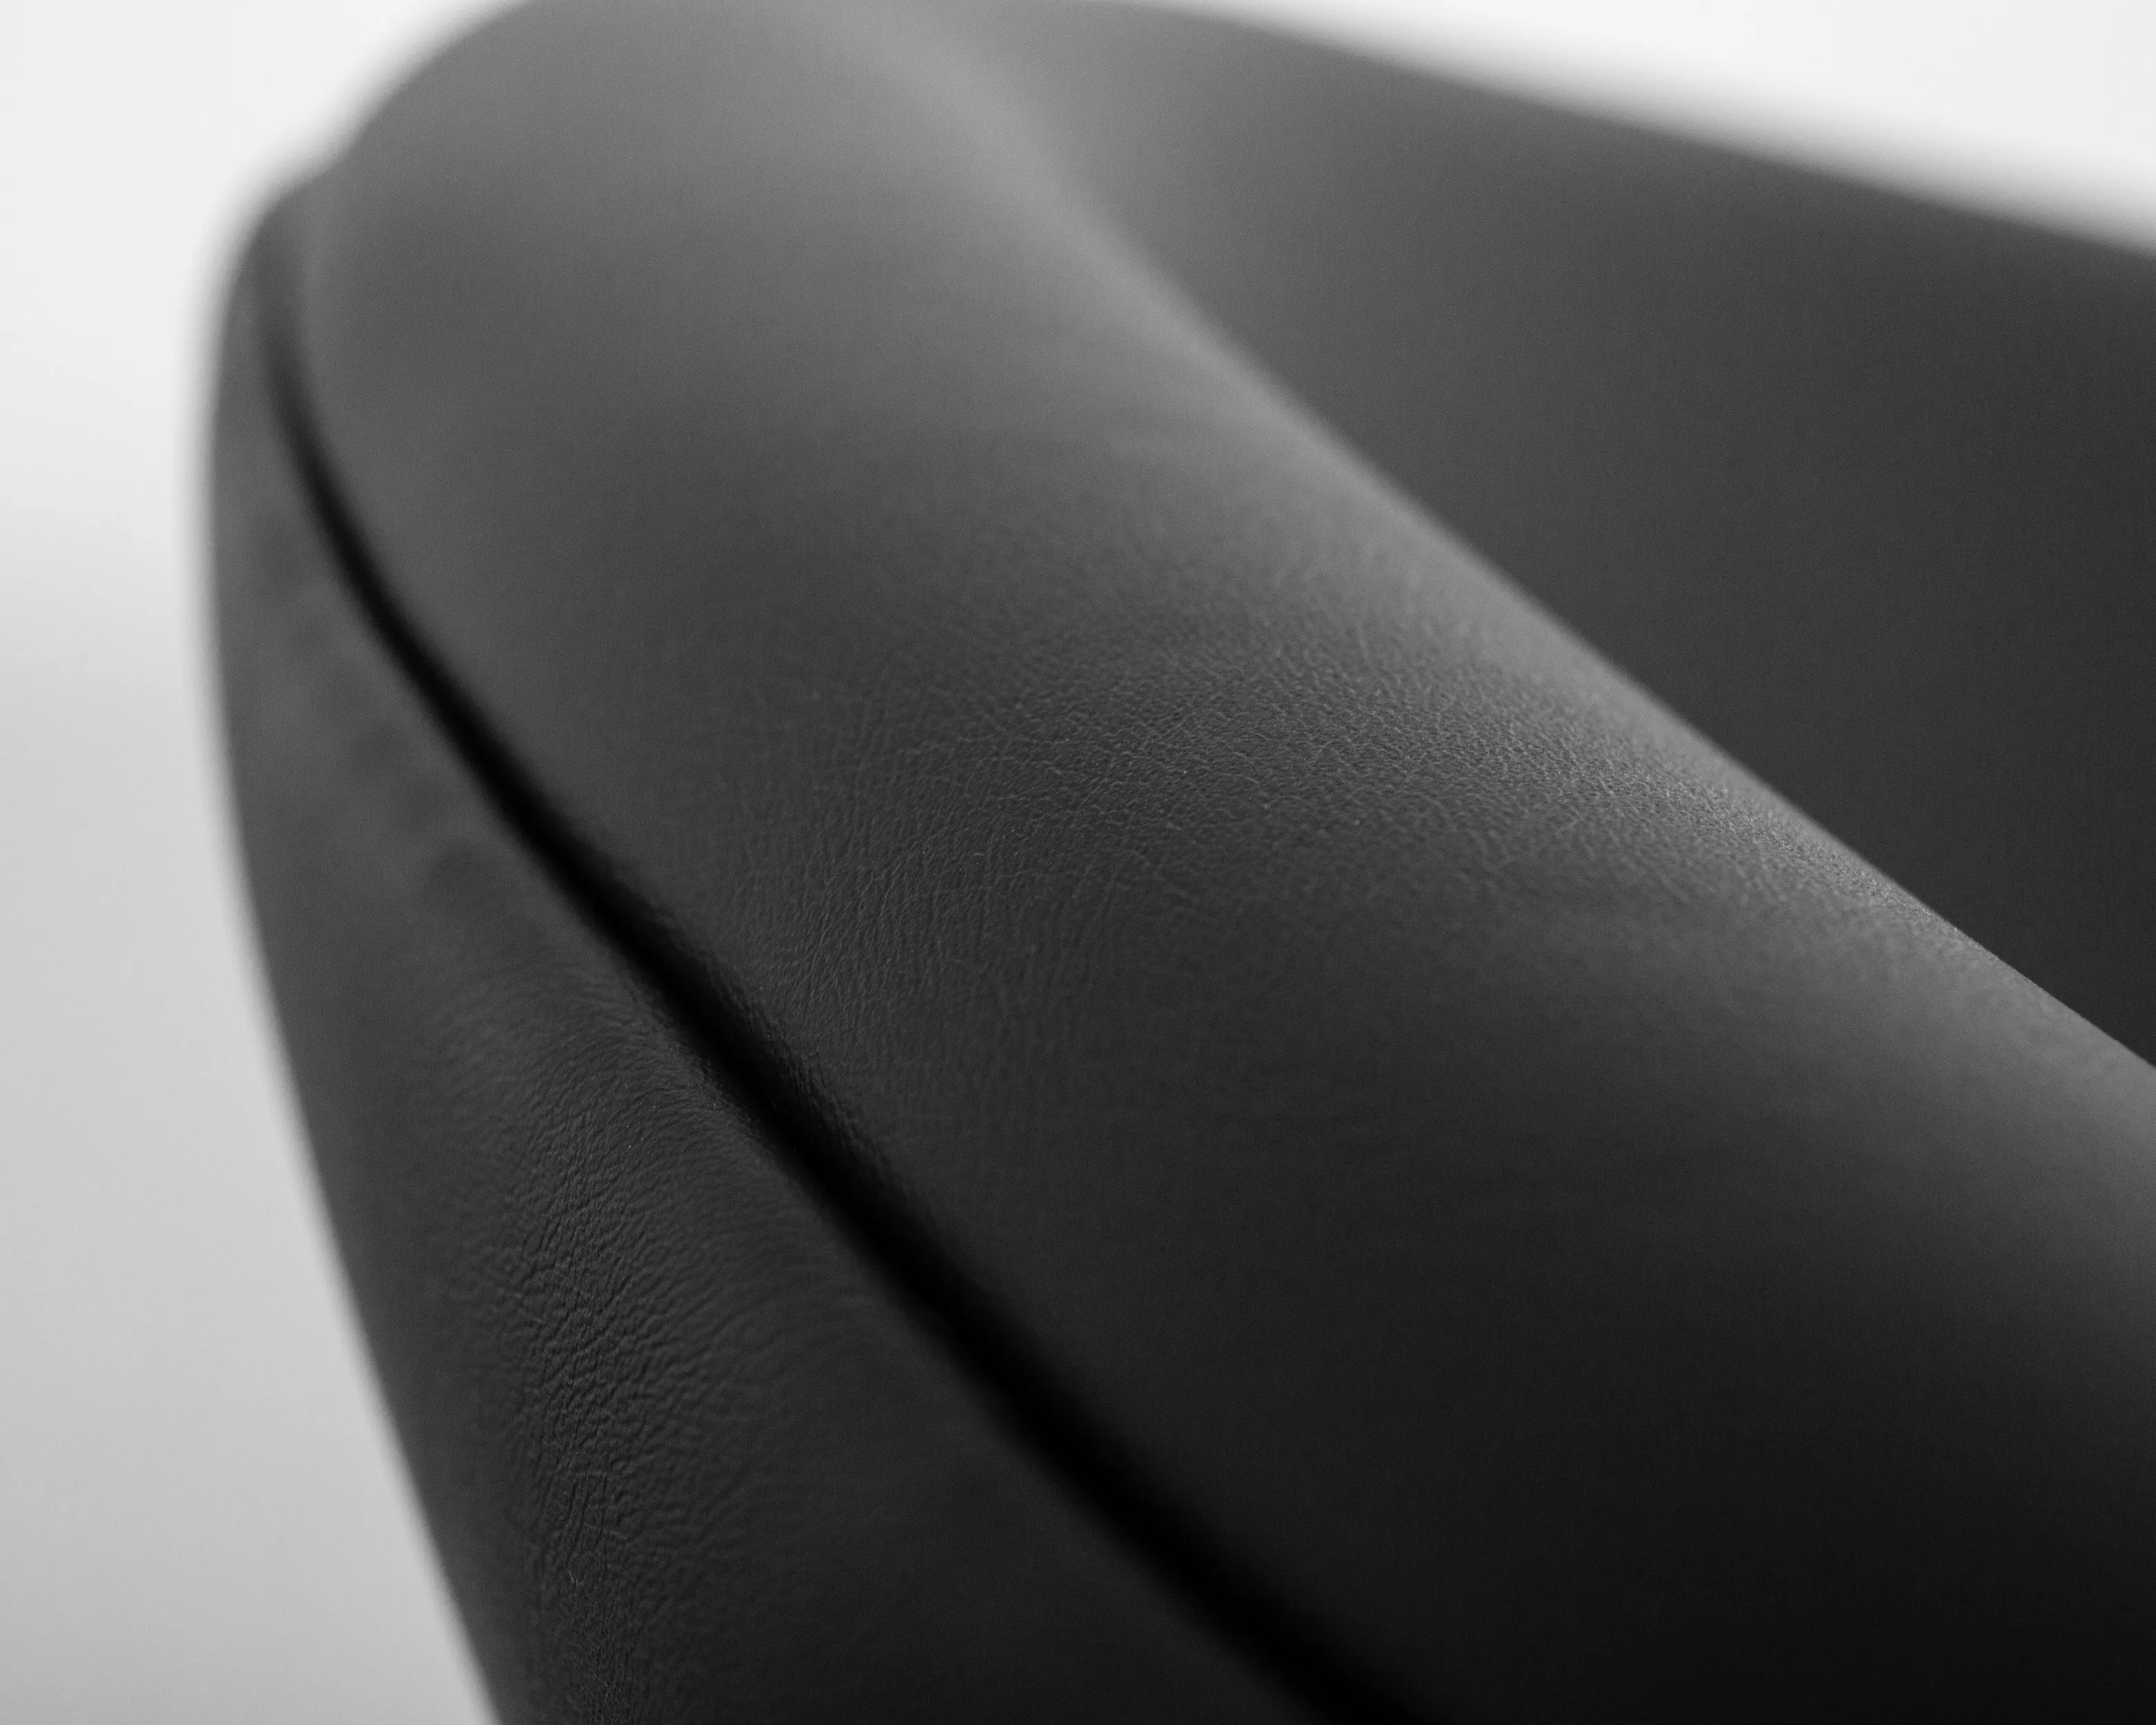 Кресло дизайнерское DOBRIN EMILY черный винил YP16, золотое основания